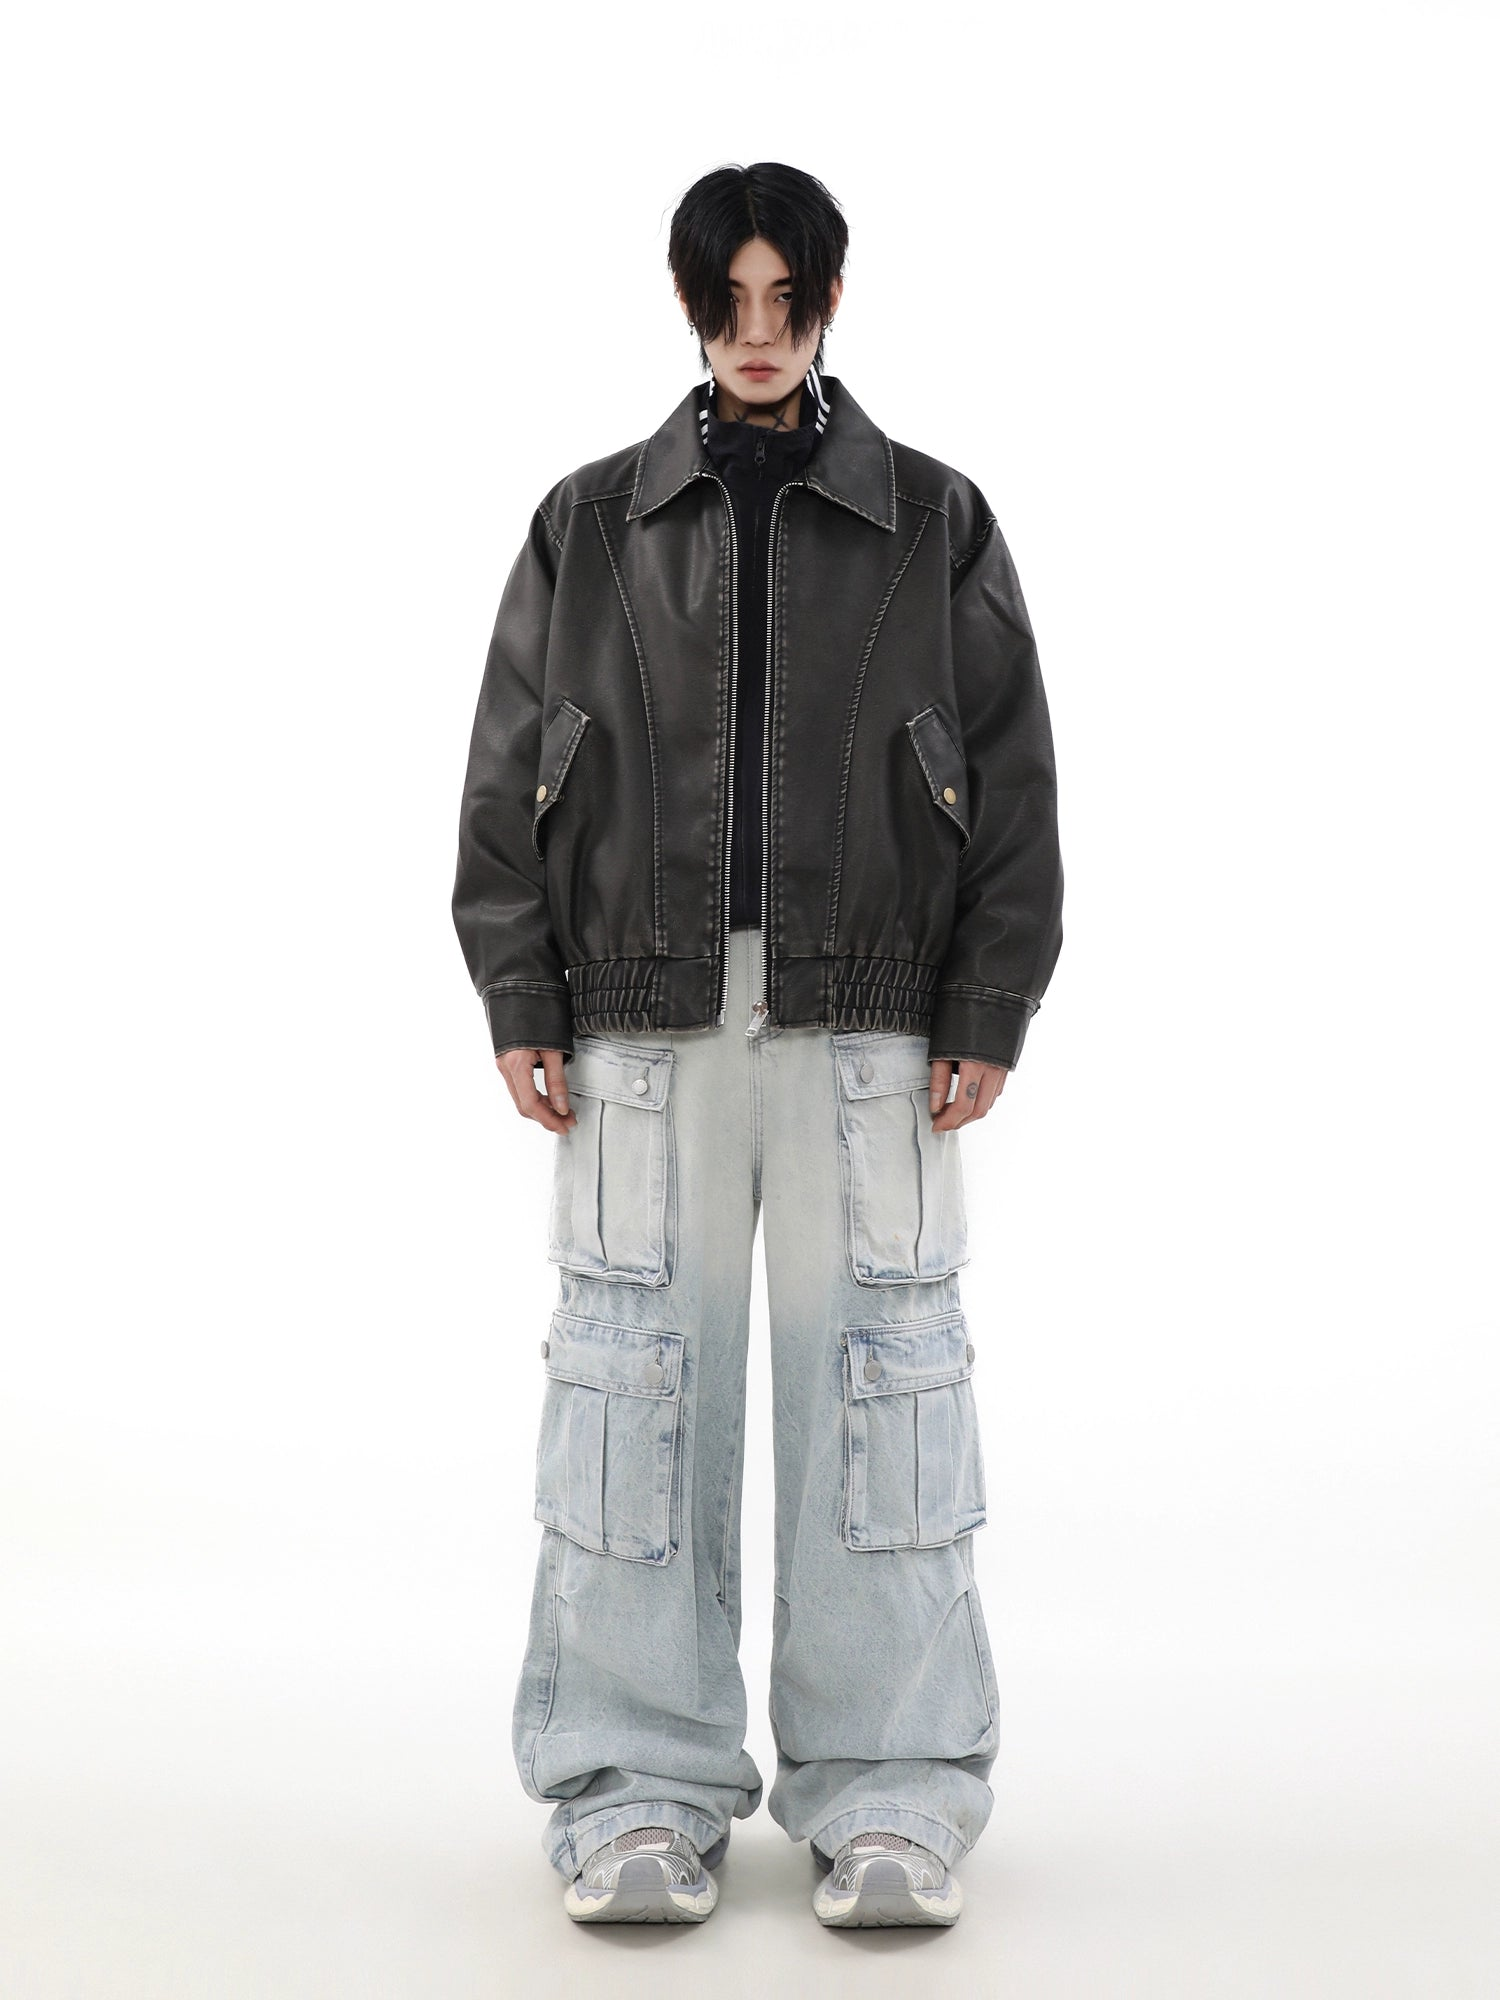 Retro Faux Leather Oversize Jacket - chiclara